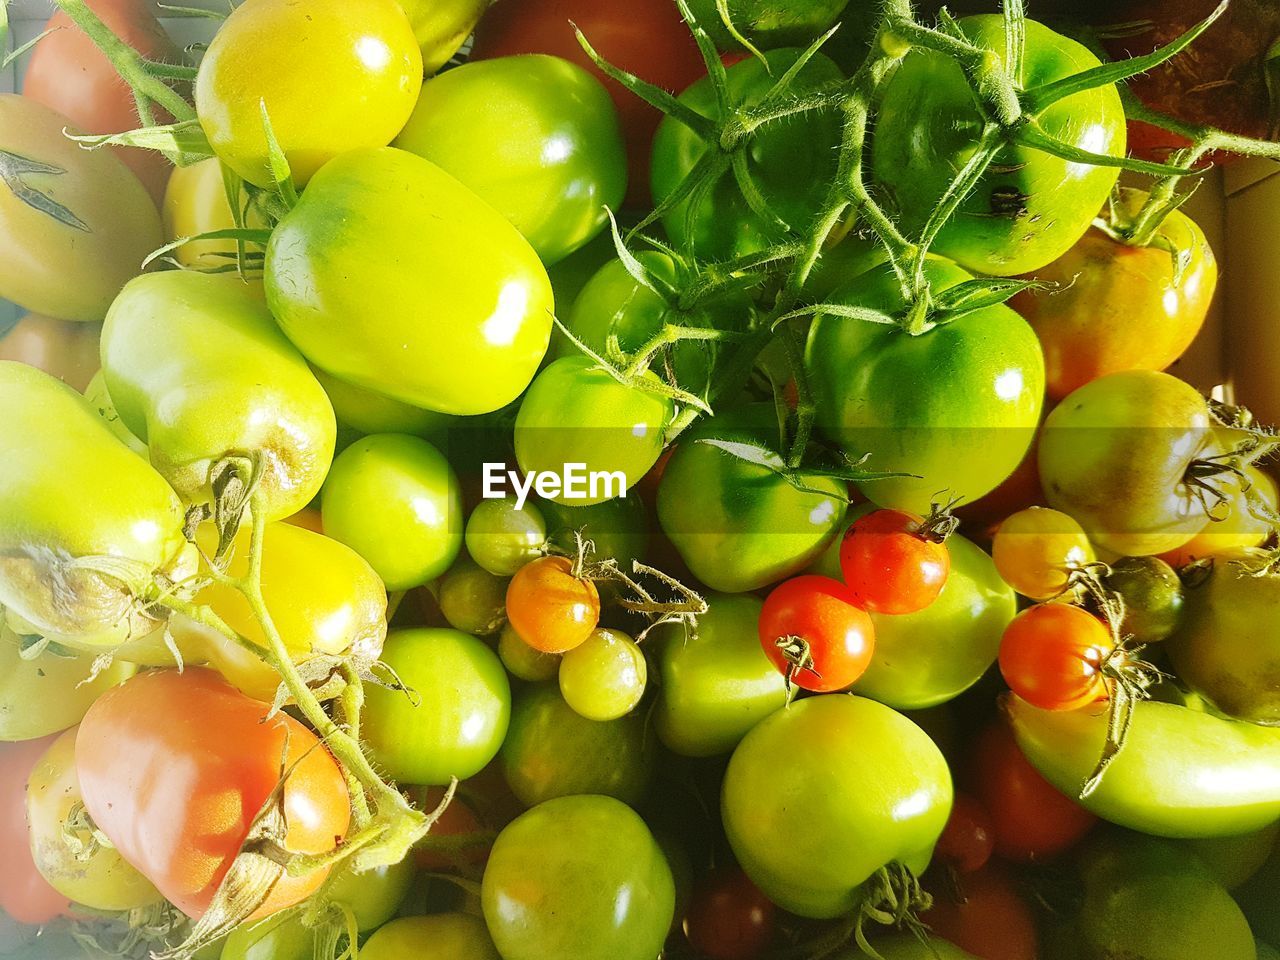 Full frame shot of green tomatoes in market